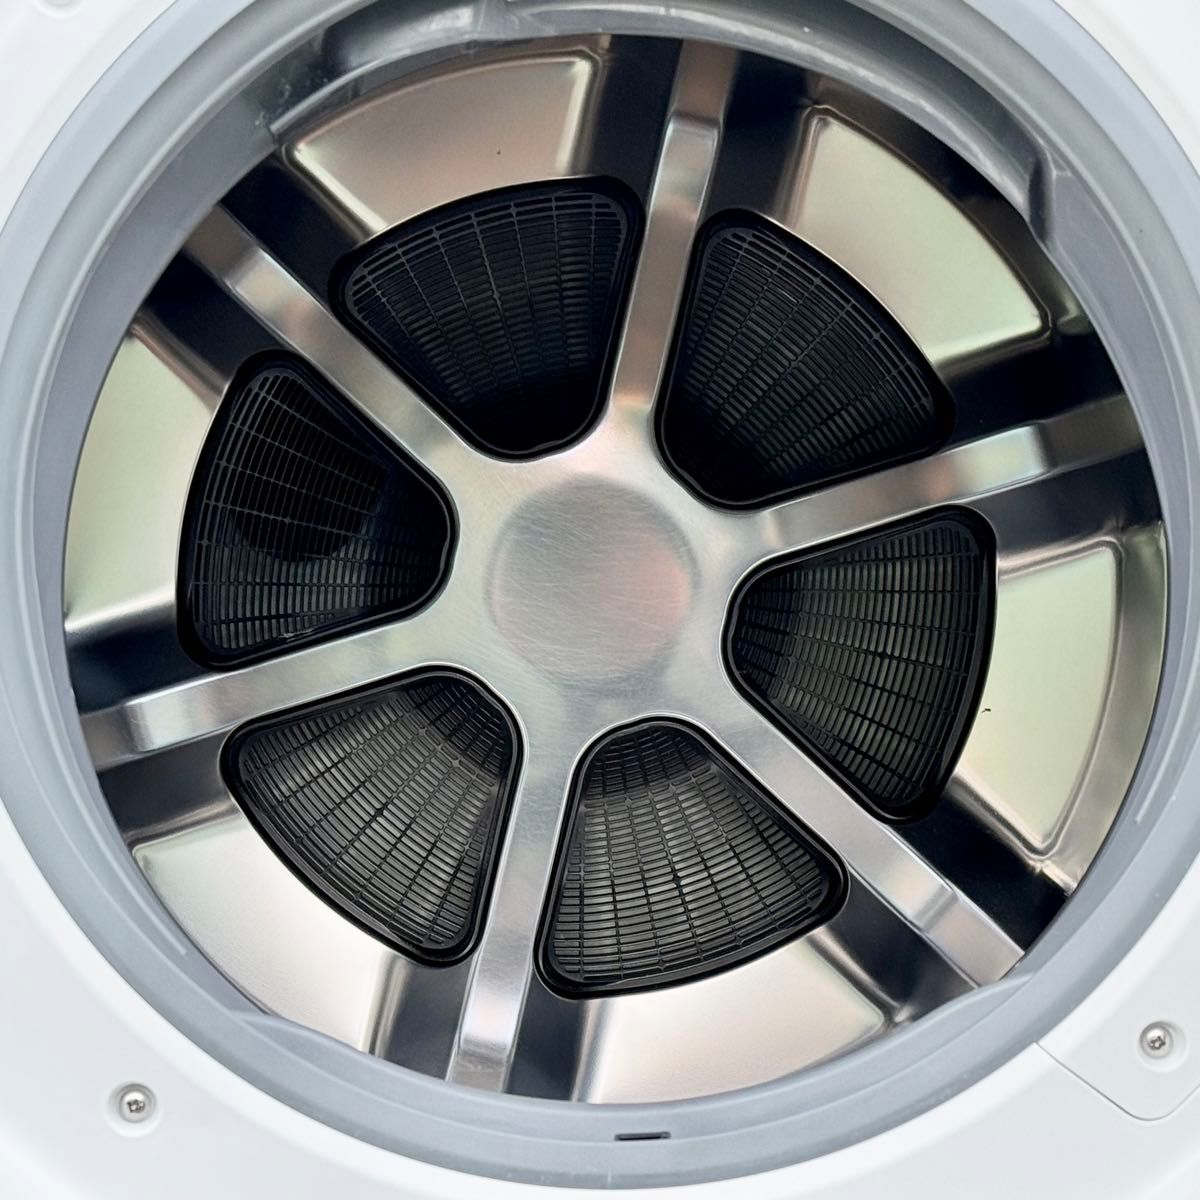 2021年製 Panasonic『ななめドラム』ドラム型洗濯乾燥機 容量12kg